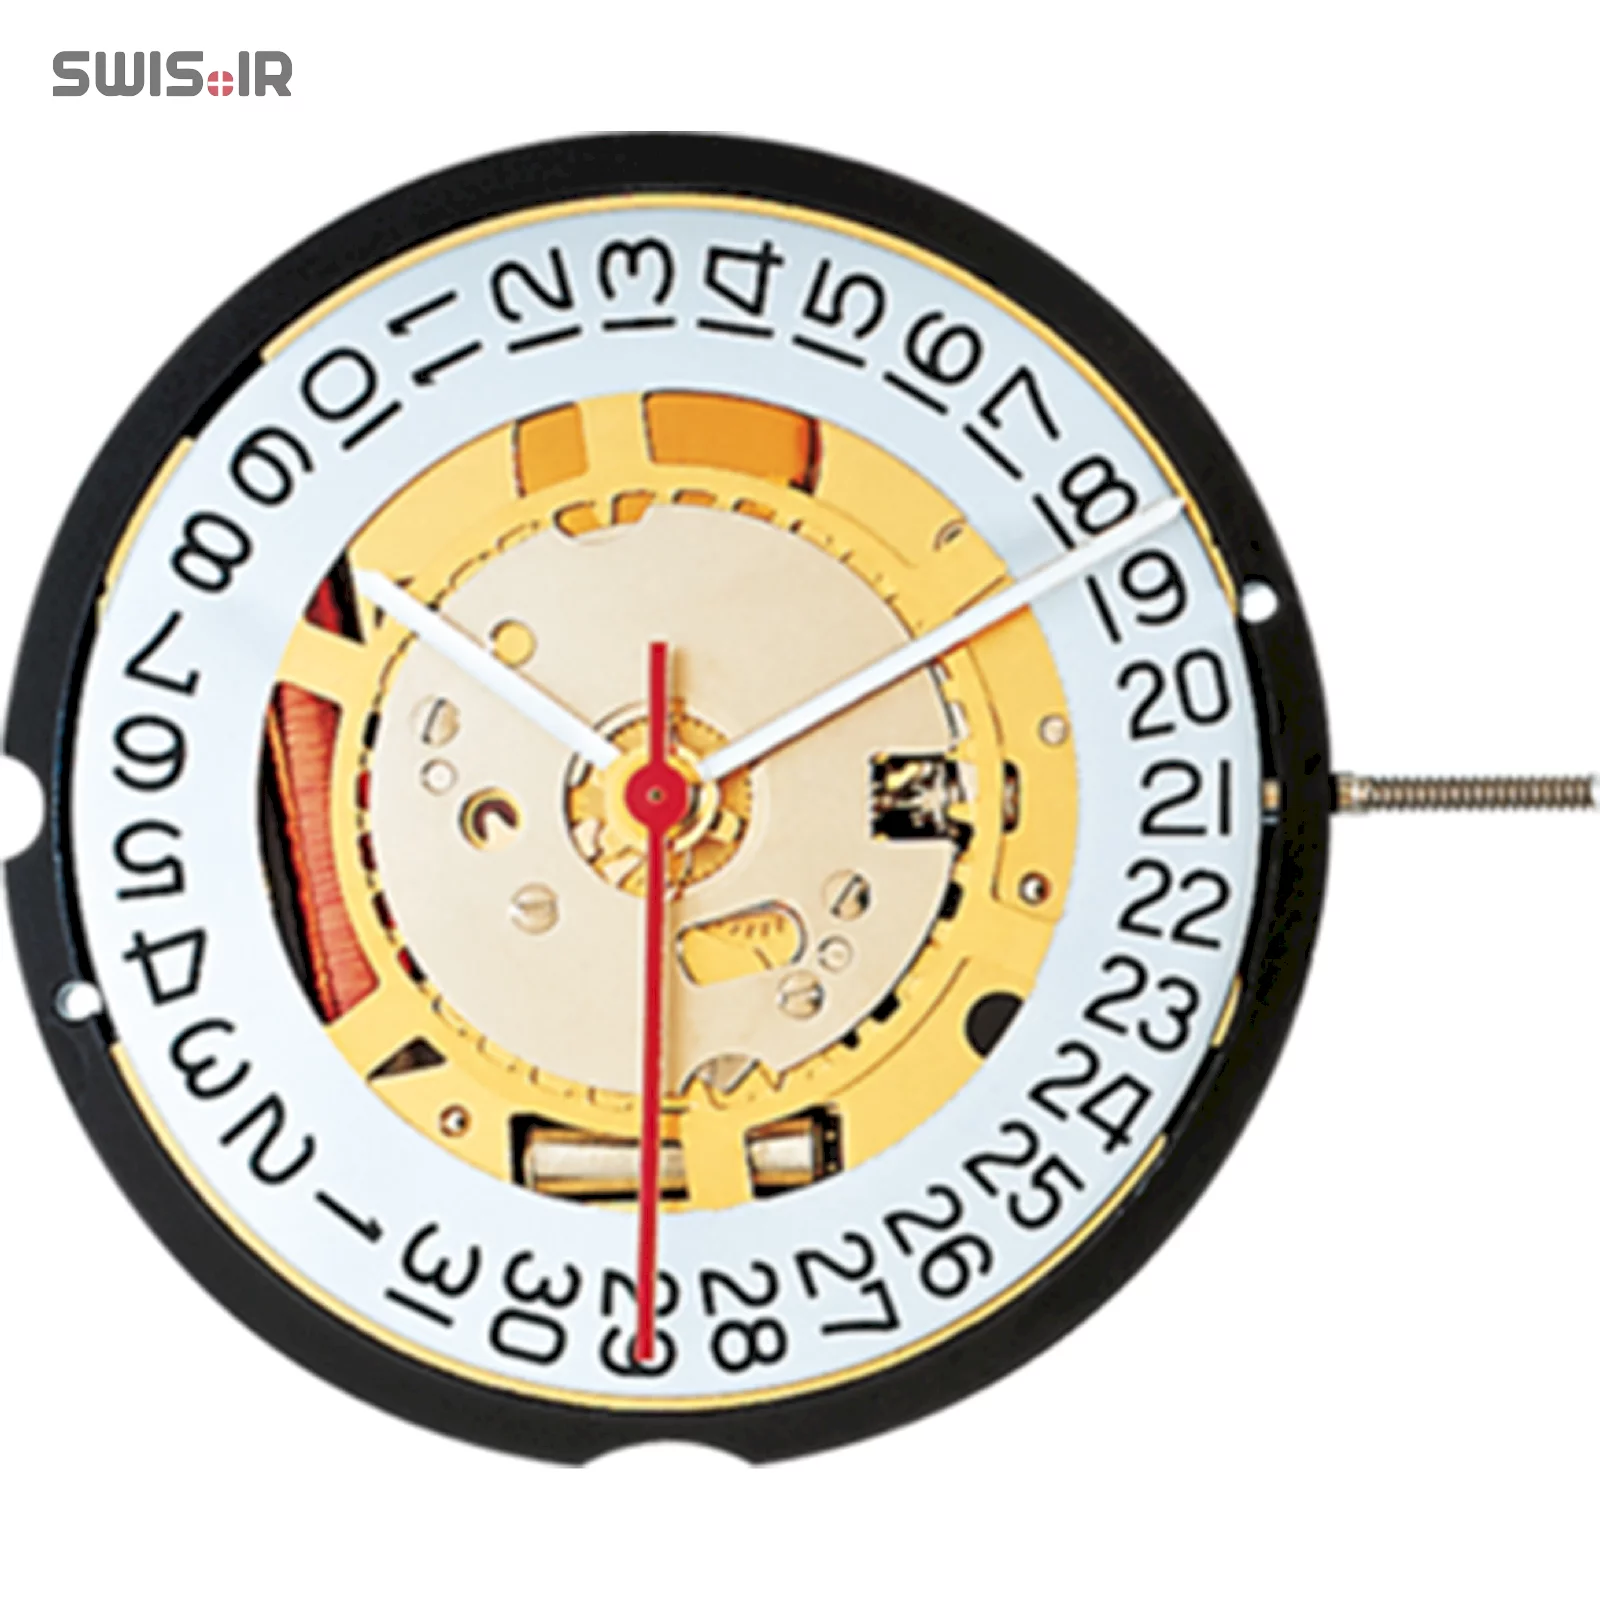 تصویر روی موتور ساعت کالیبر 715 ساخت شرکت روندا سوئیس